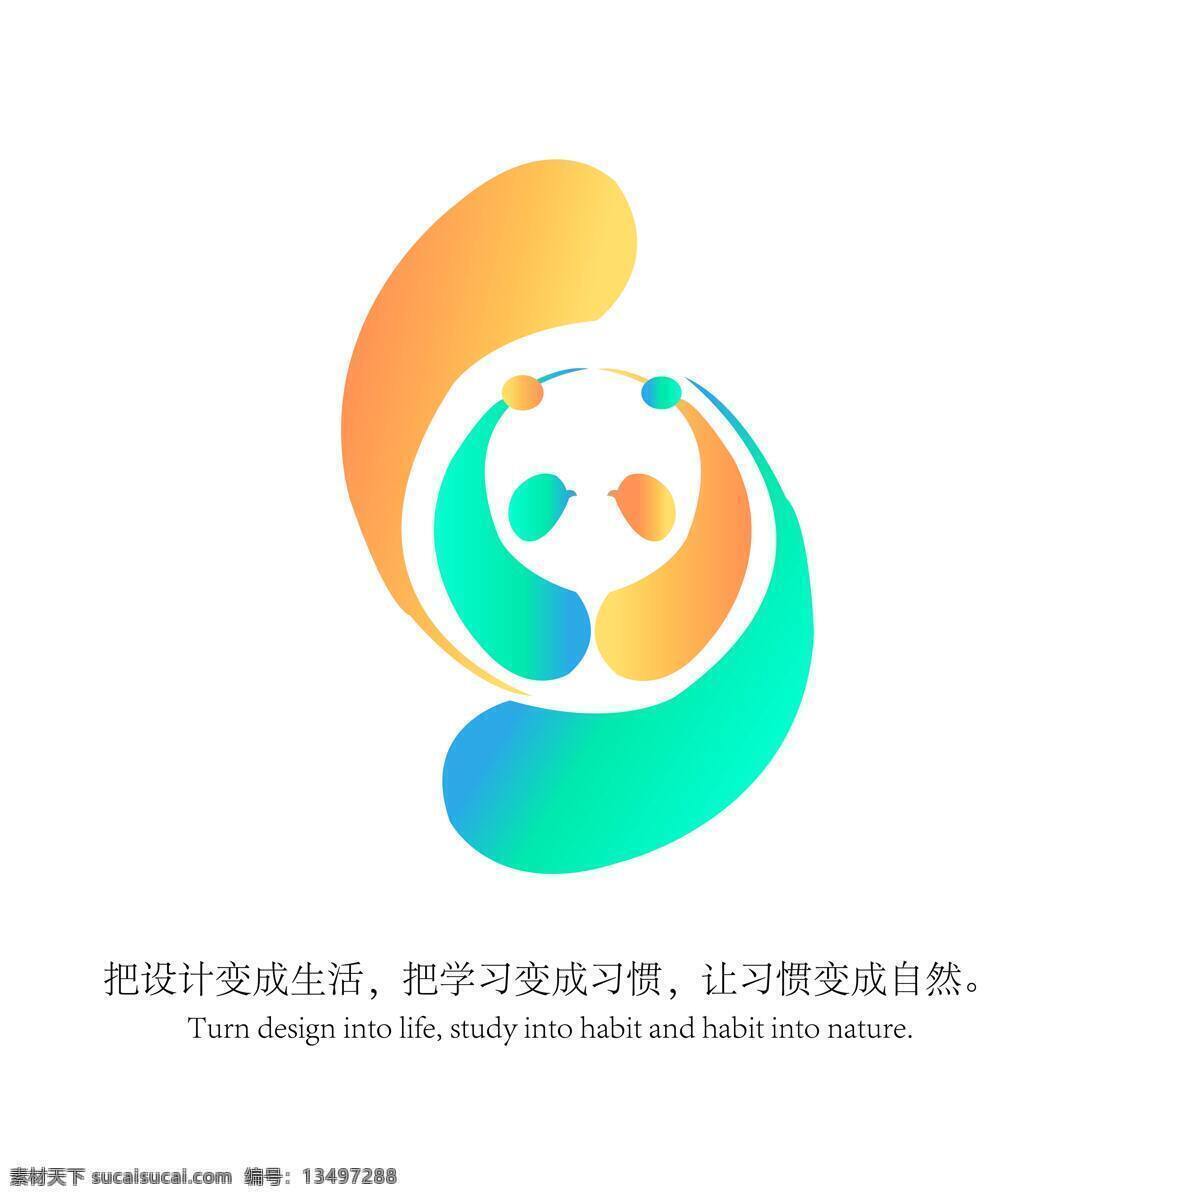 熊猫 logo图片 插画 logo 渐变 生活百科 餐饮美食